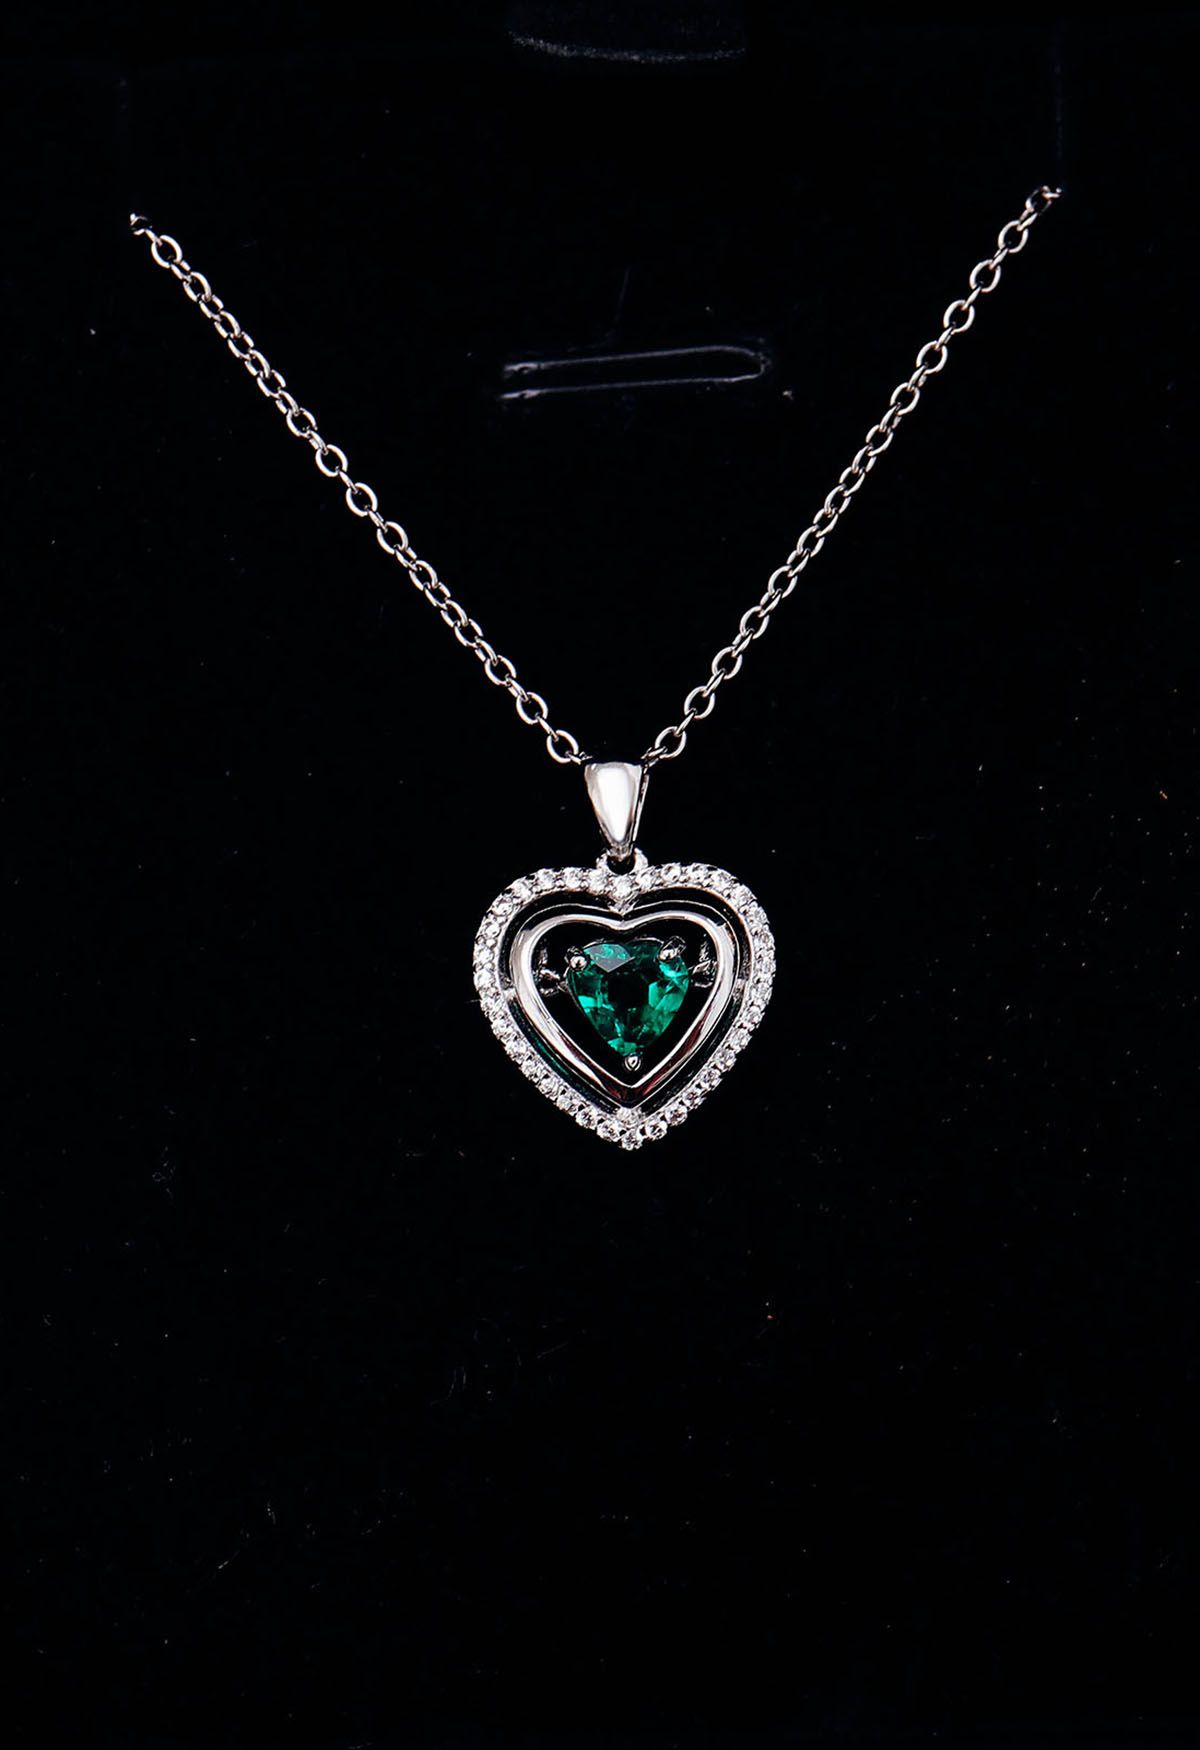 Colar de gema esmeralda em formato de coração oco